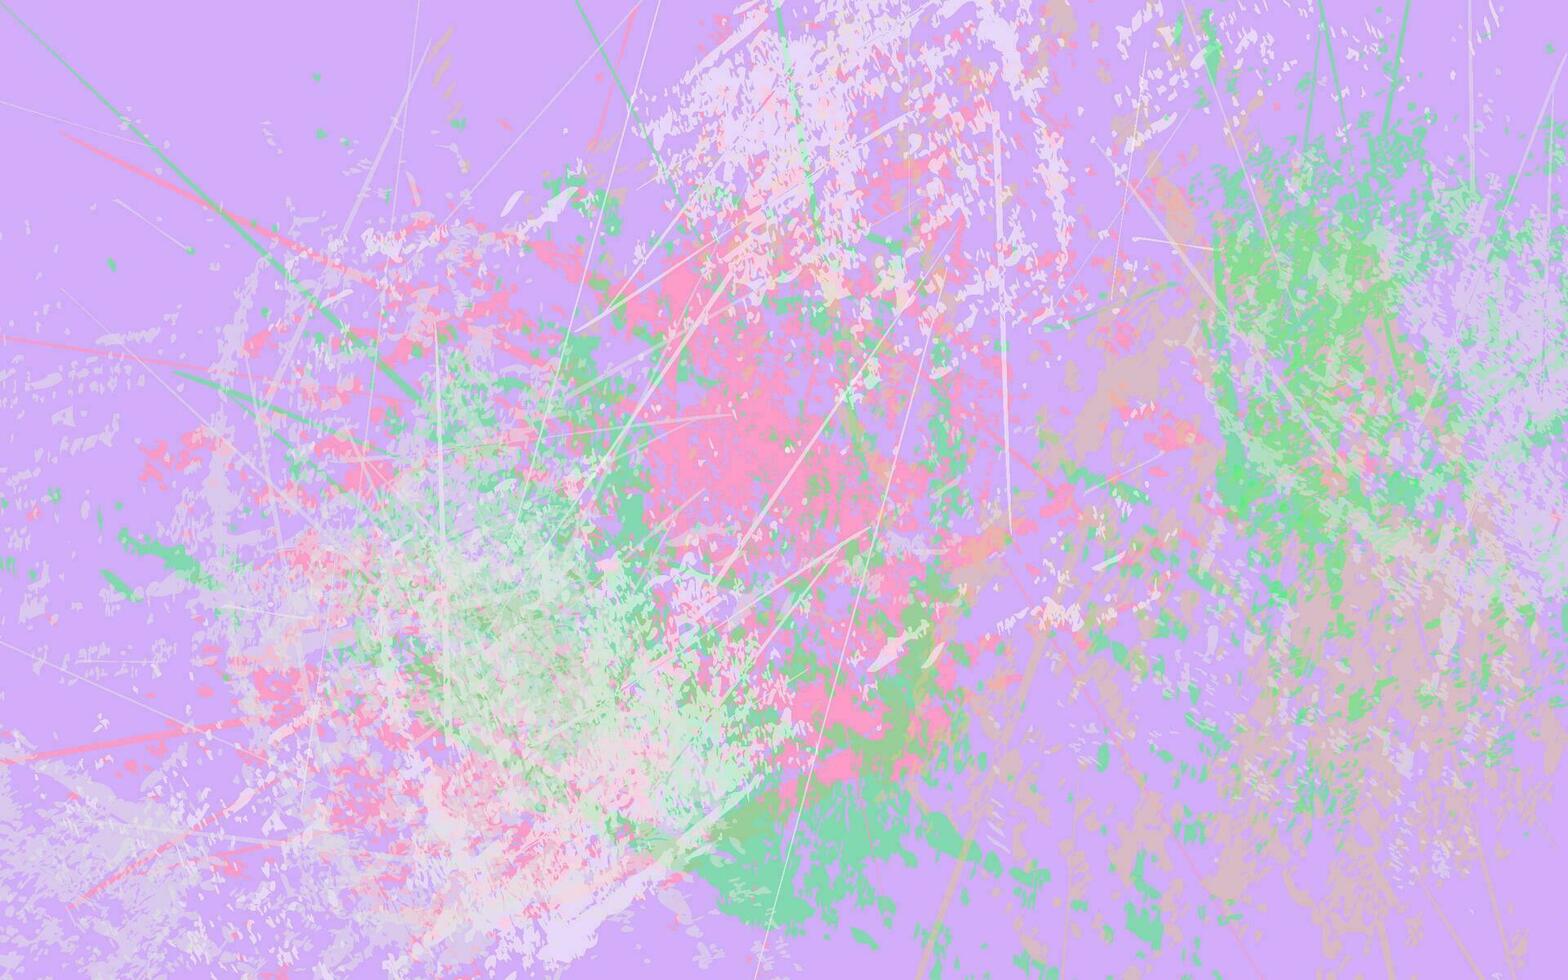 abstrakter Grunge-Textur-Splash-Farbhintergrund vektor